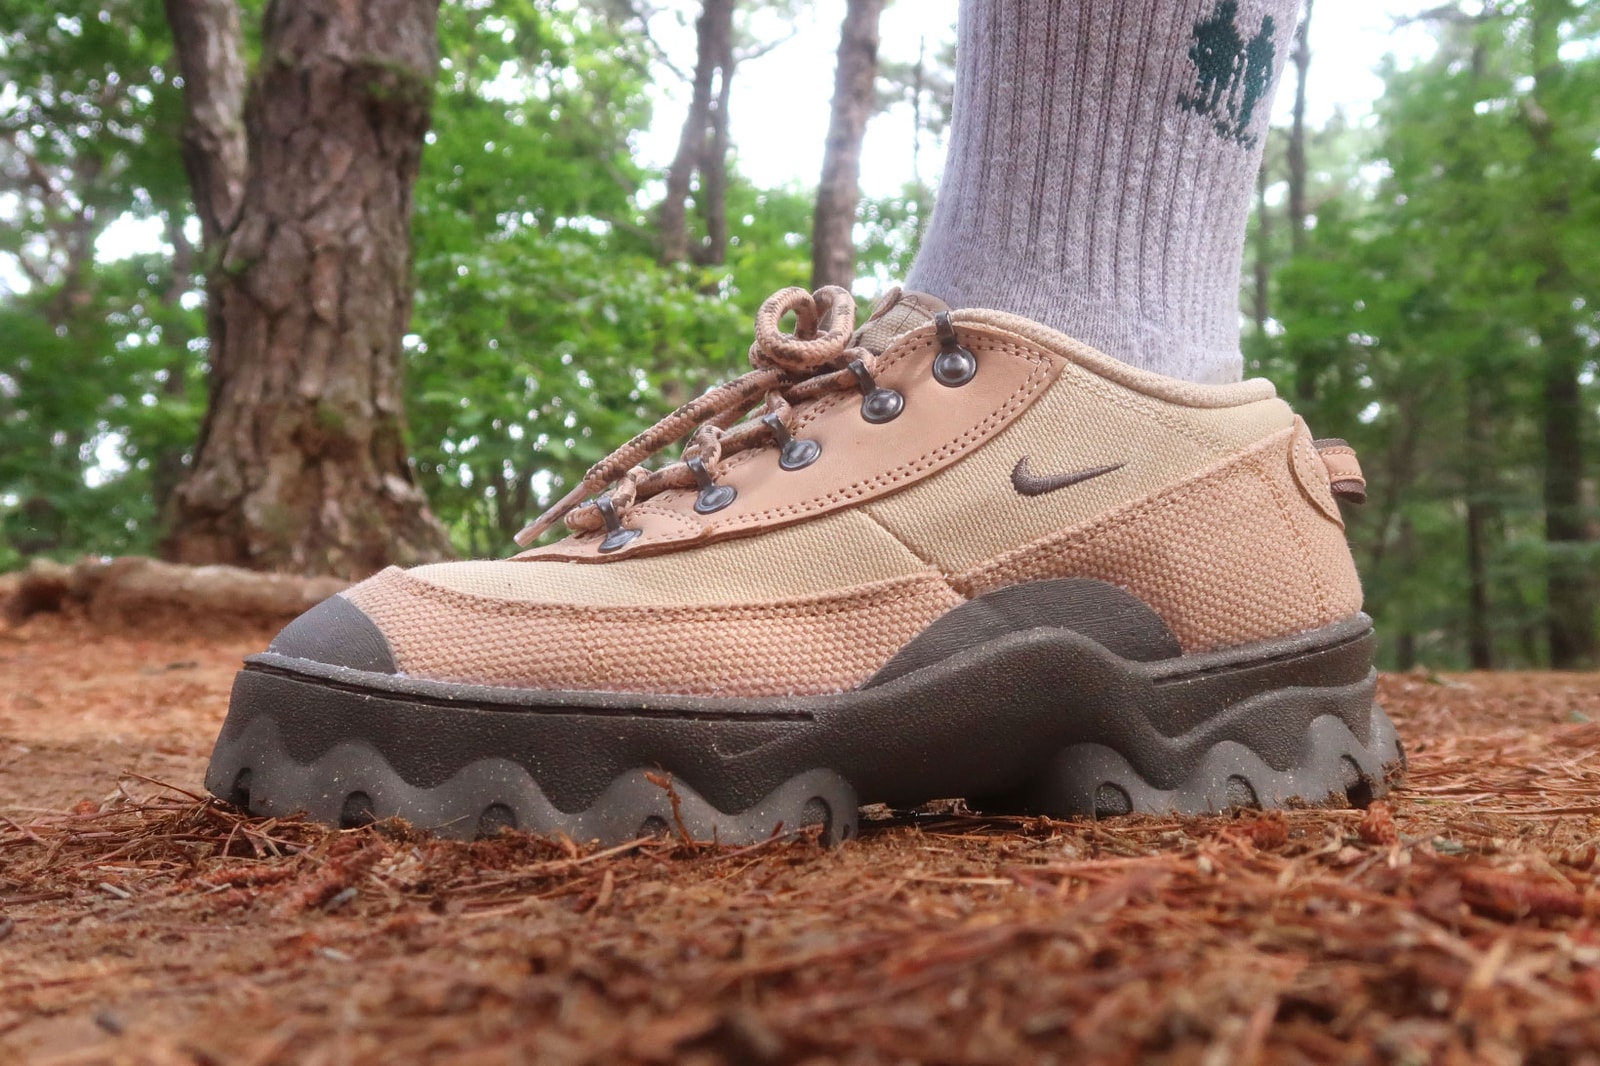 Fuera de borda erupción Panadería Nike Lahar Low "Grain" Womens Hiking Shoe Review | Hypebae